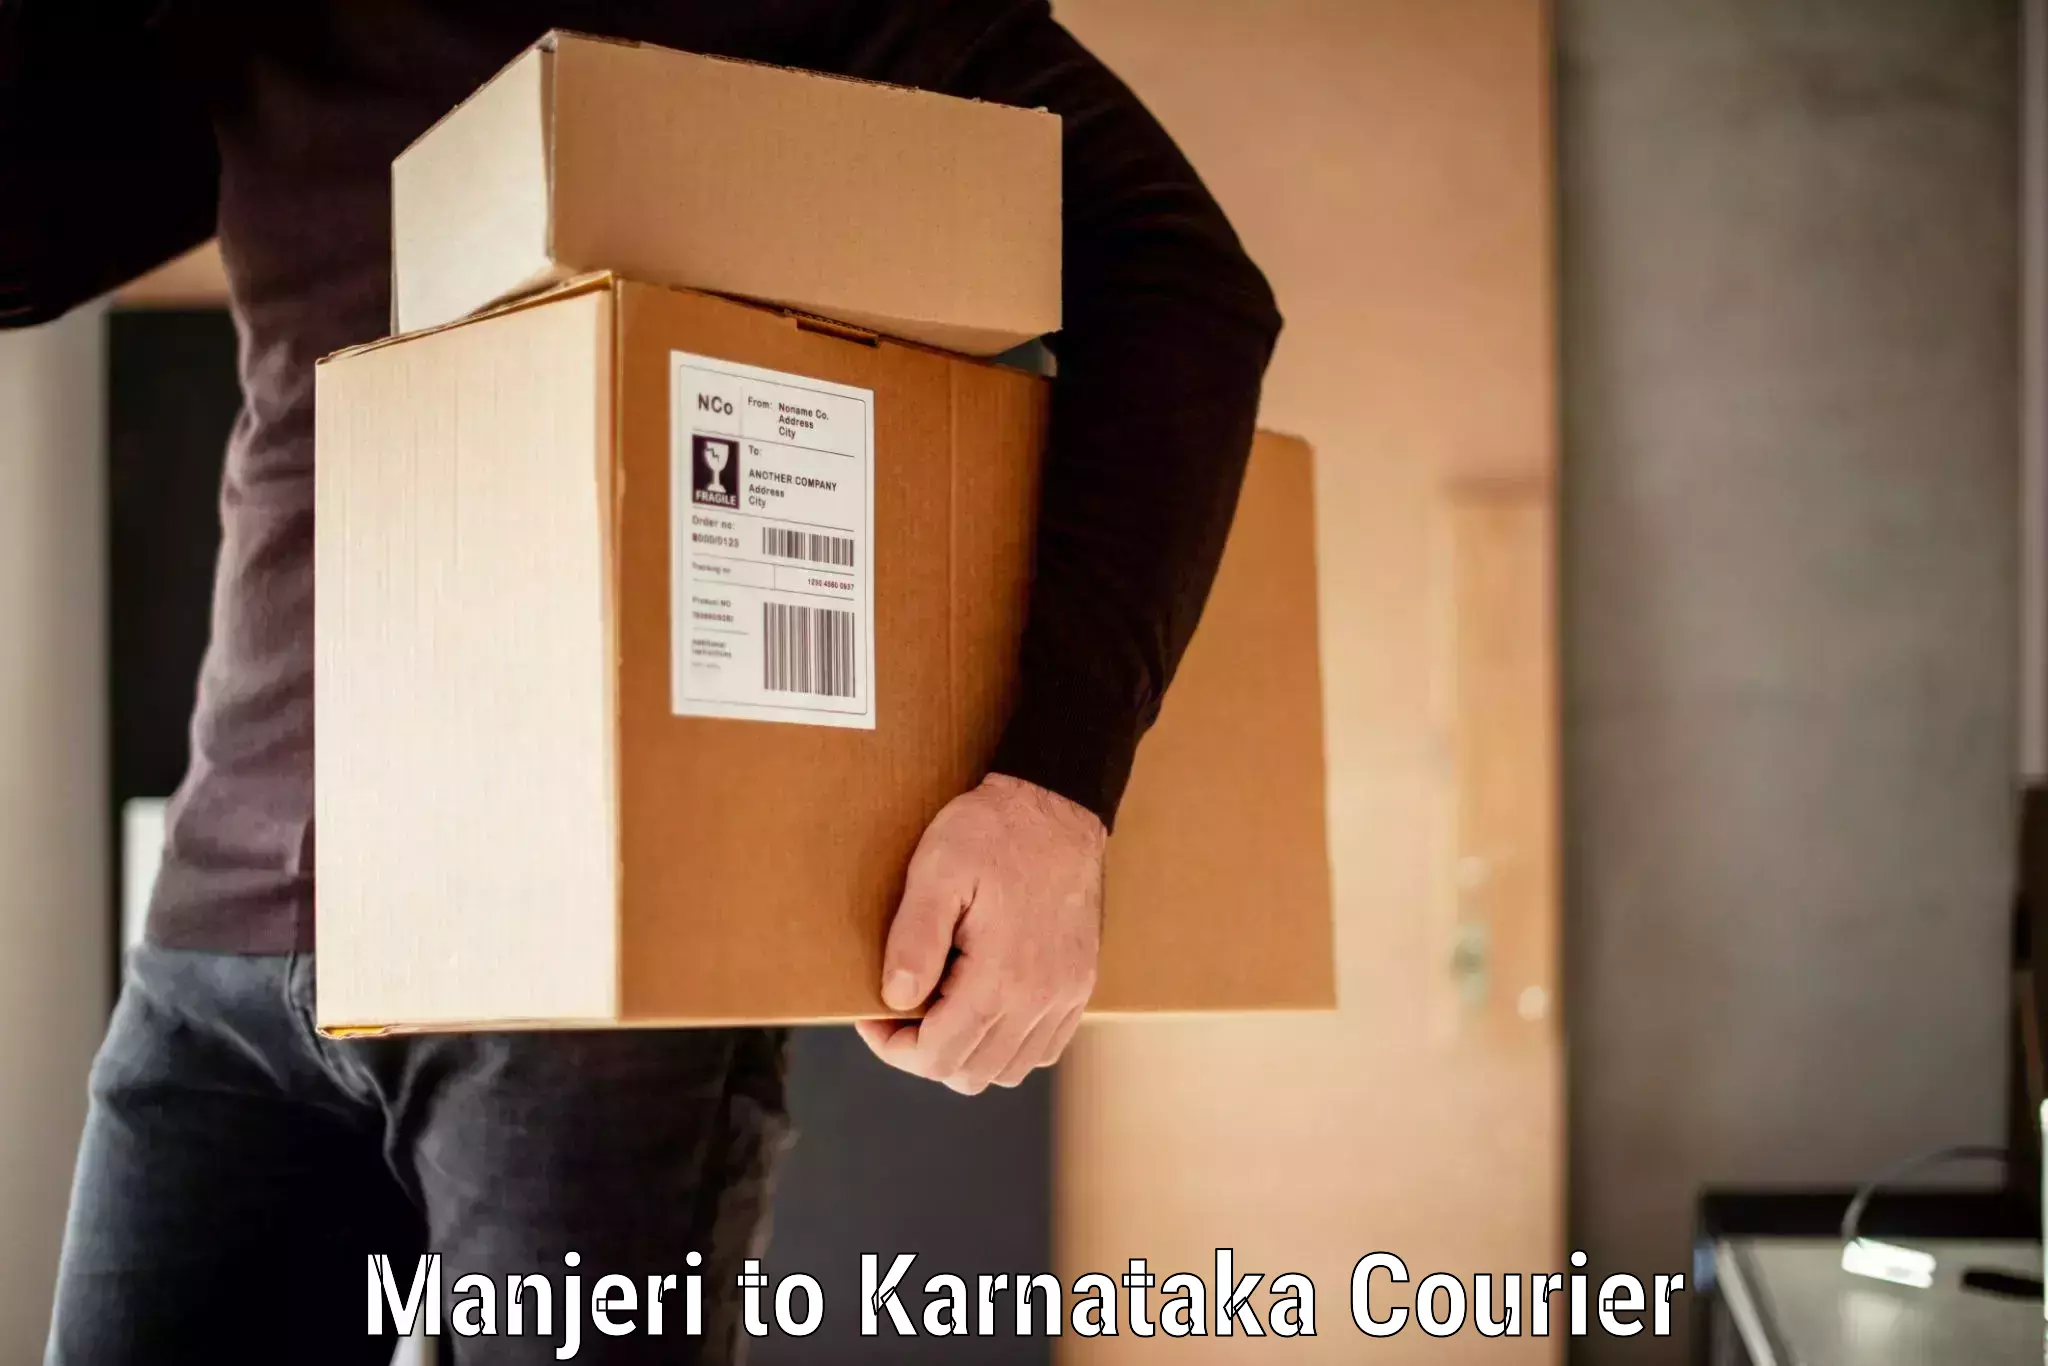 Baggage shipping experience Manjeri to Karnataka